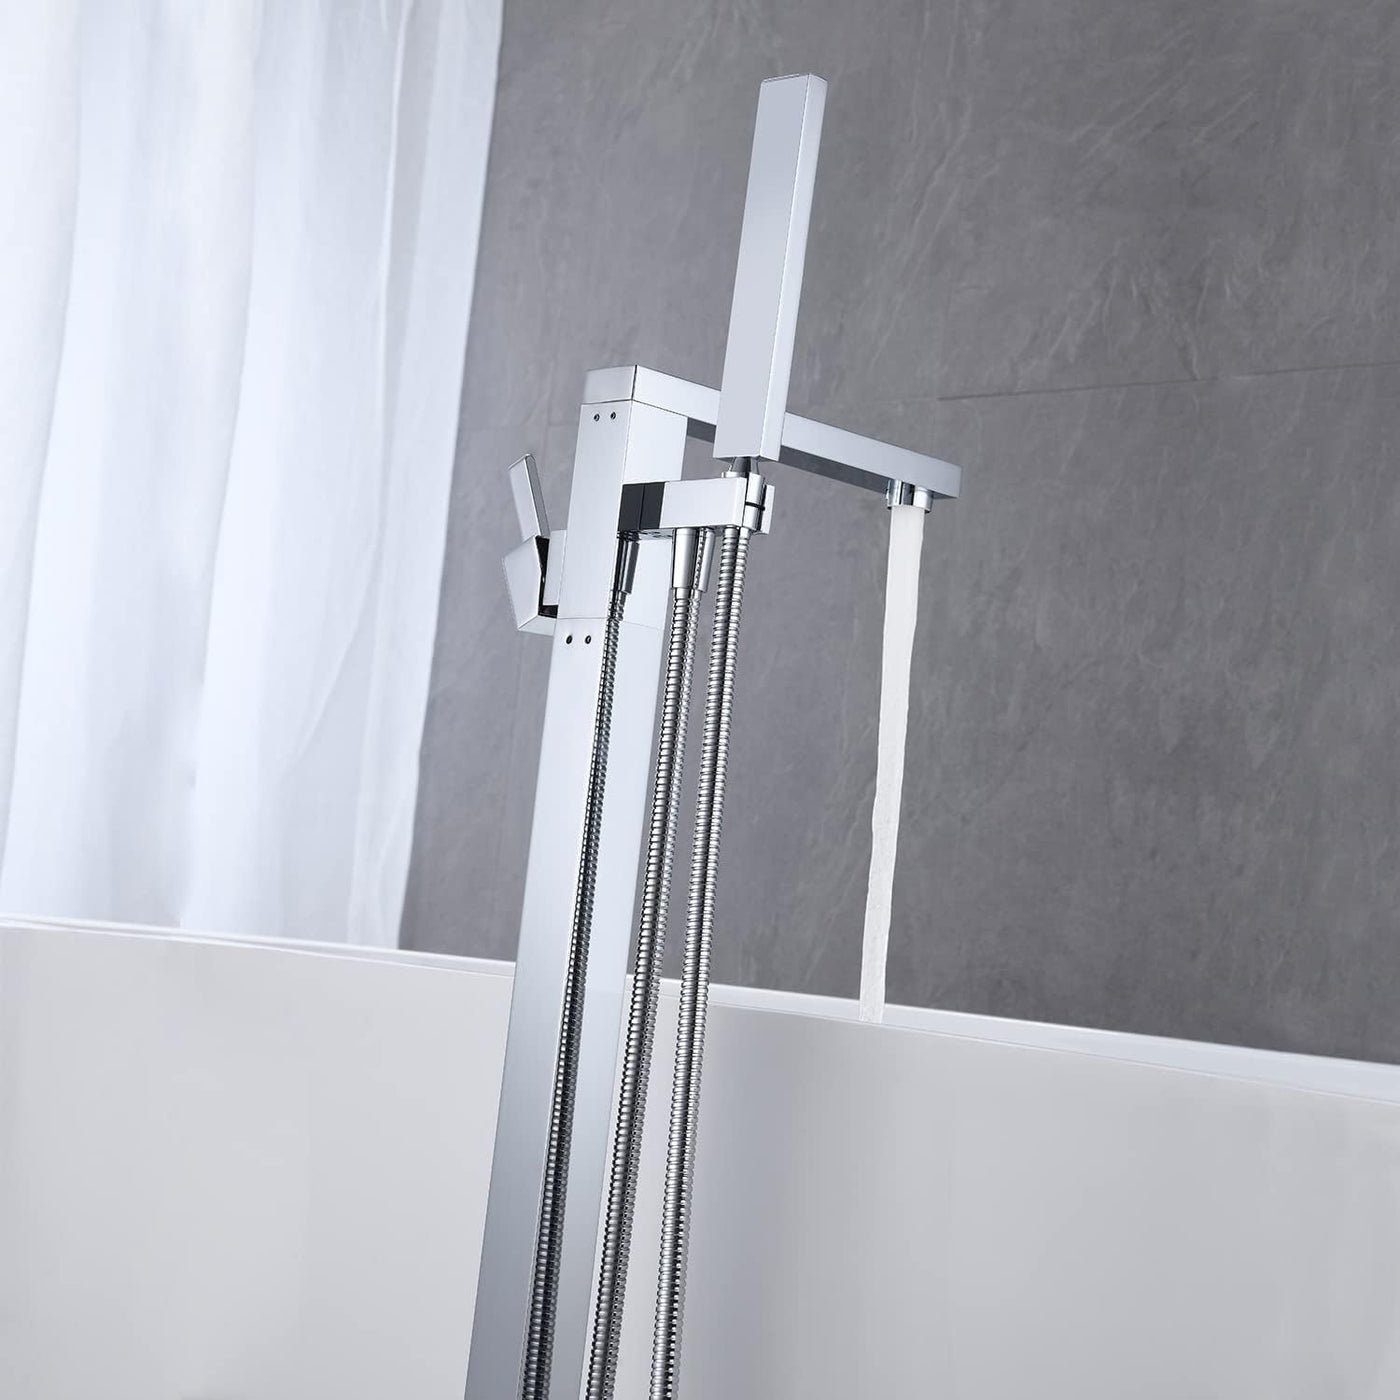 Wowkk Freestanding Bathtub Faucet Tub Filler Chrome Floor Mount - $160